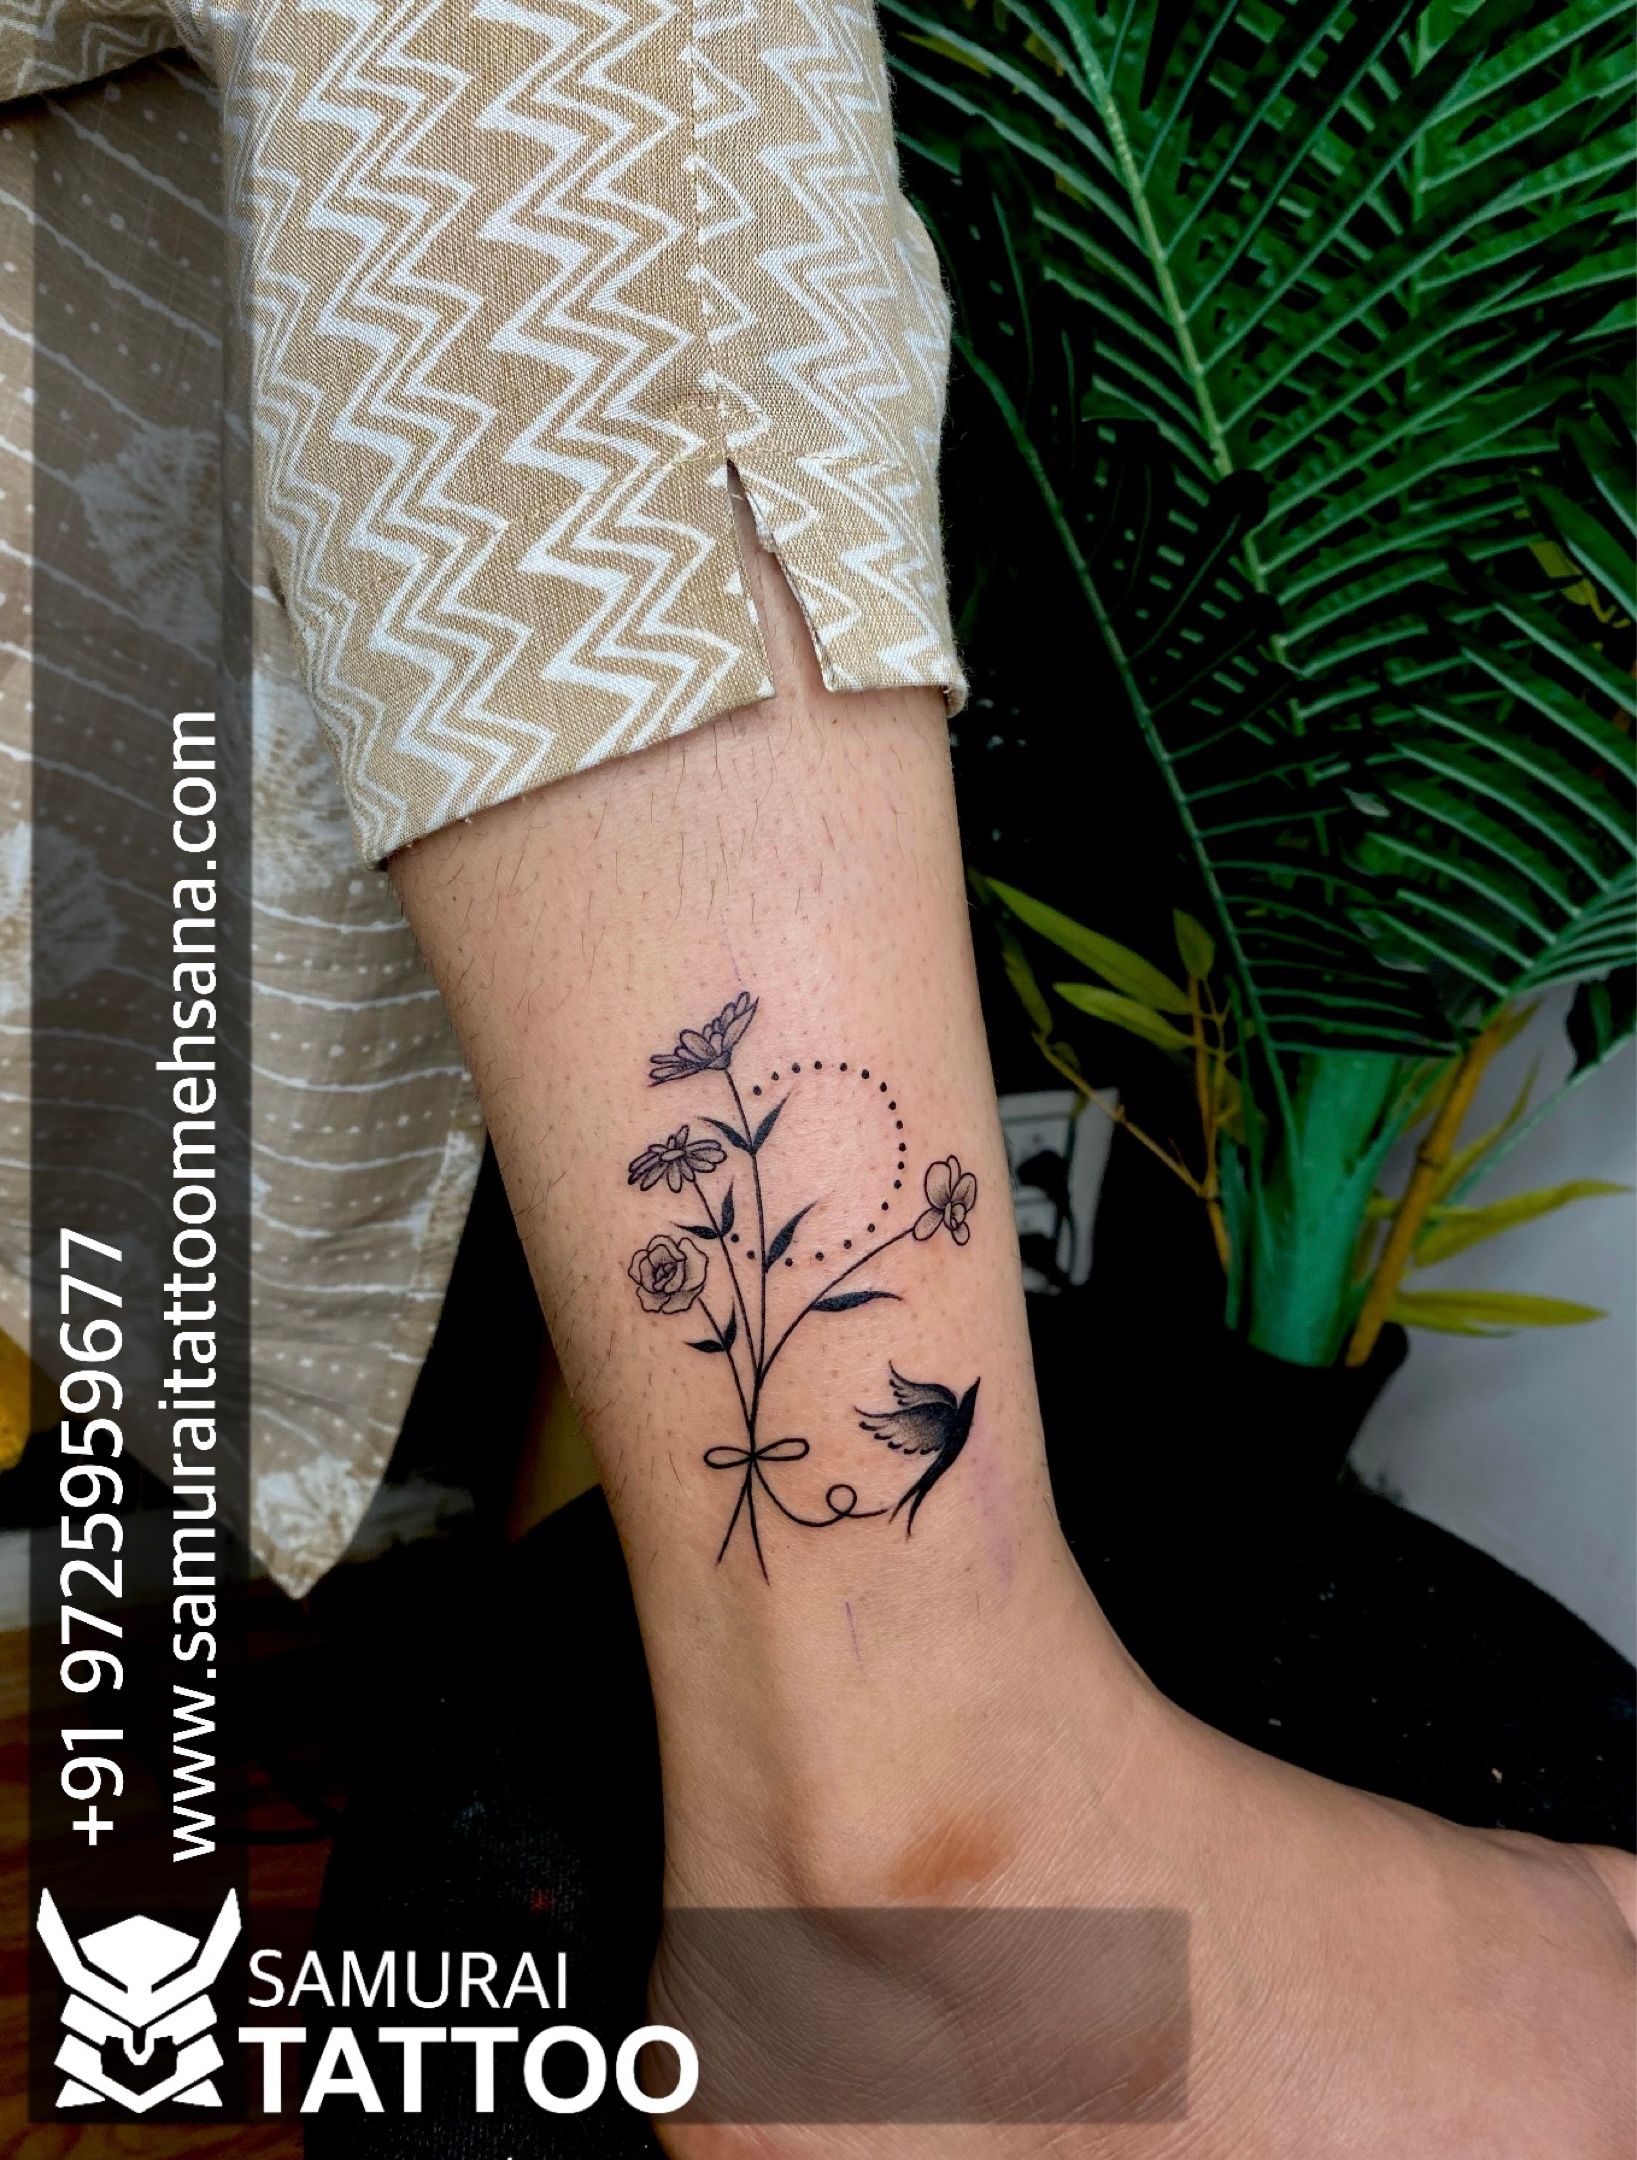 Update 79 creative leg tattoos super hot  thtantai2